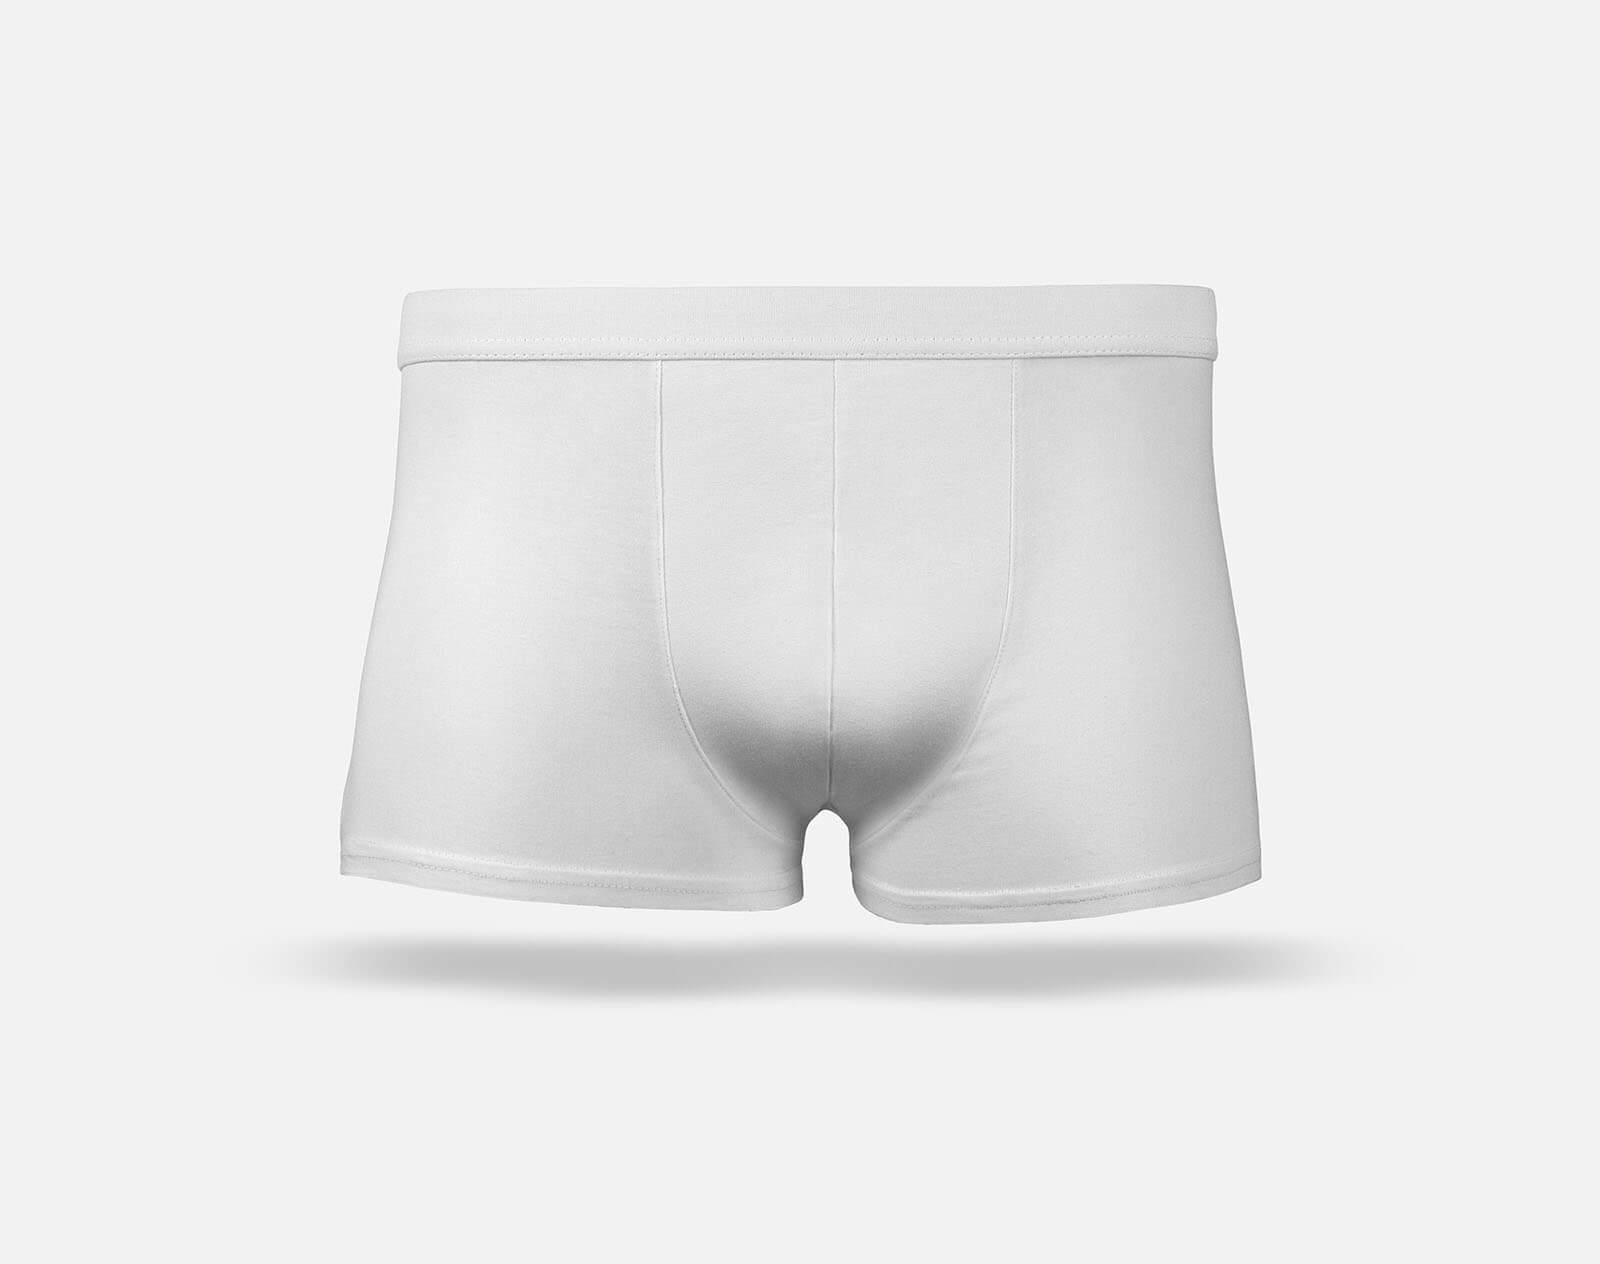 Male Underwear Mockup